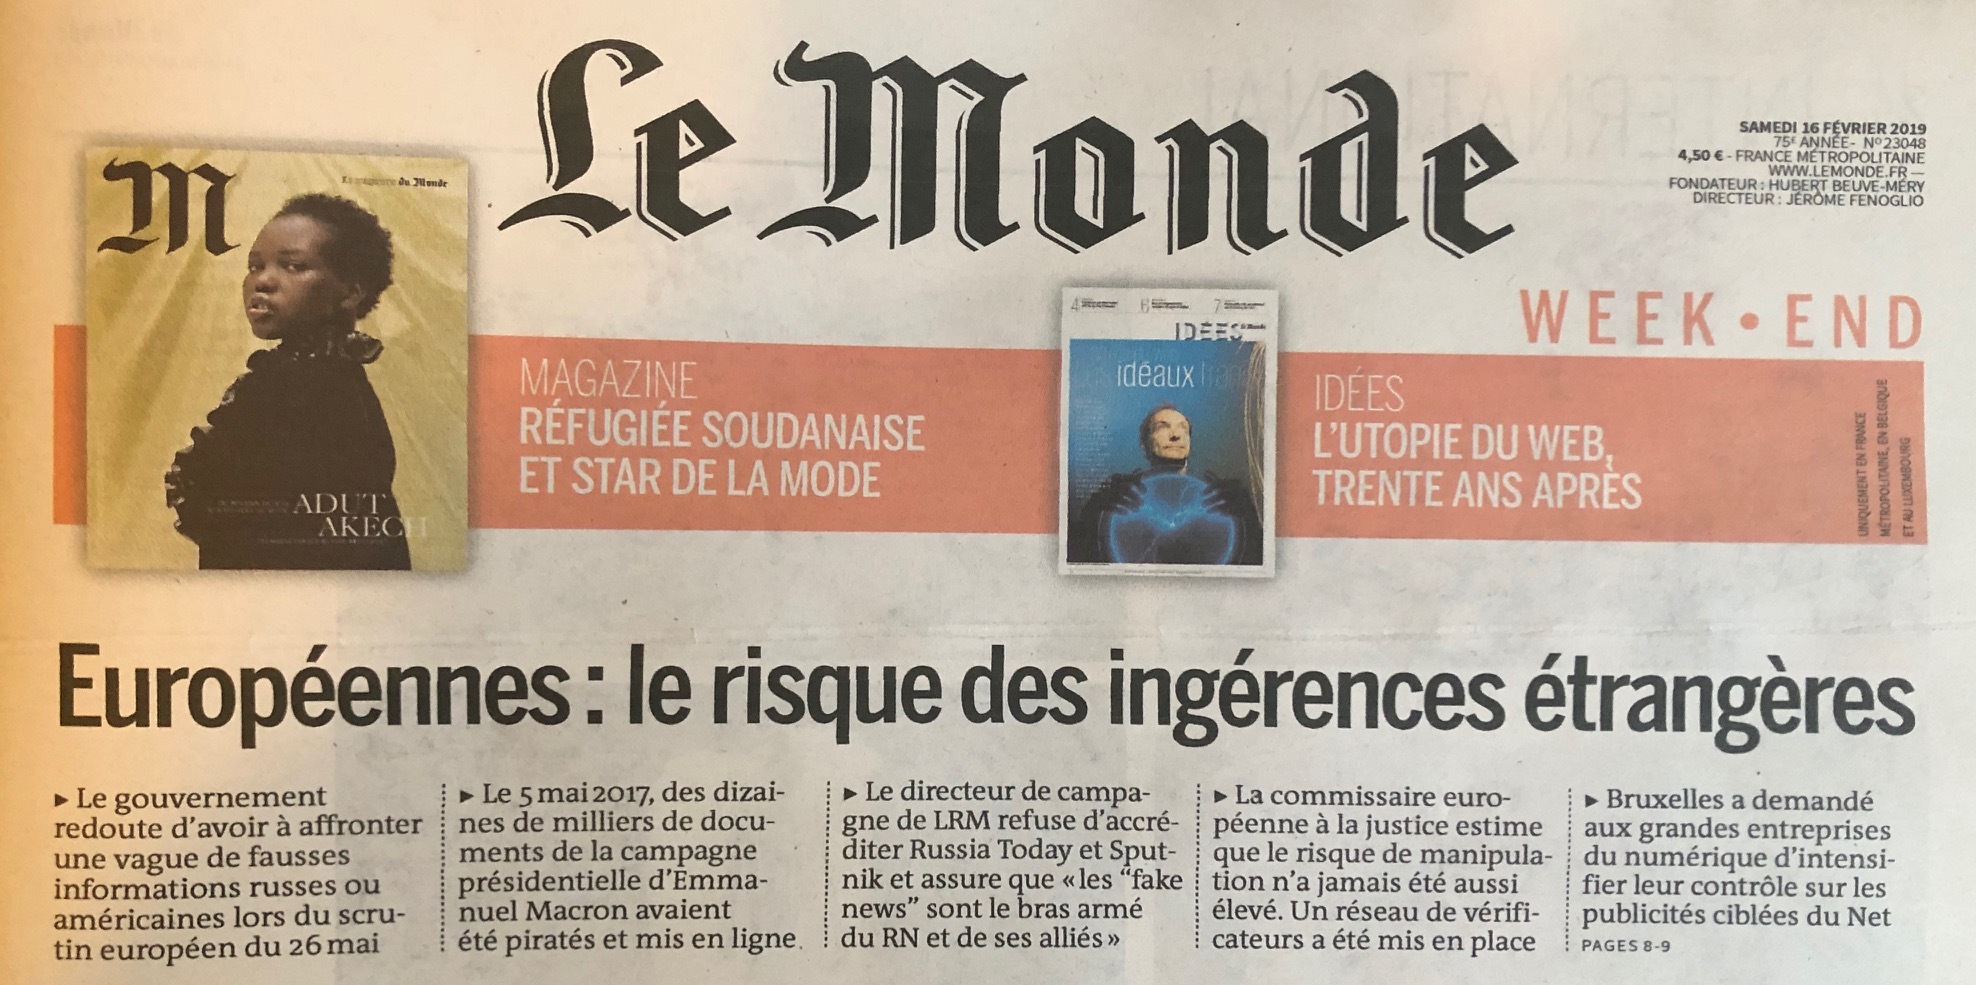 Le Monde denuncia l’elevato rischio di “ingerenze straniere” nelle elezioni europee